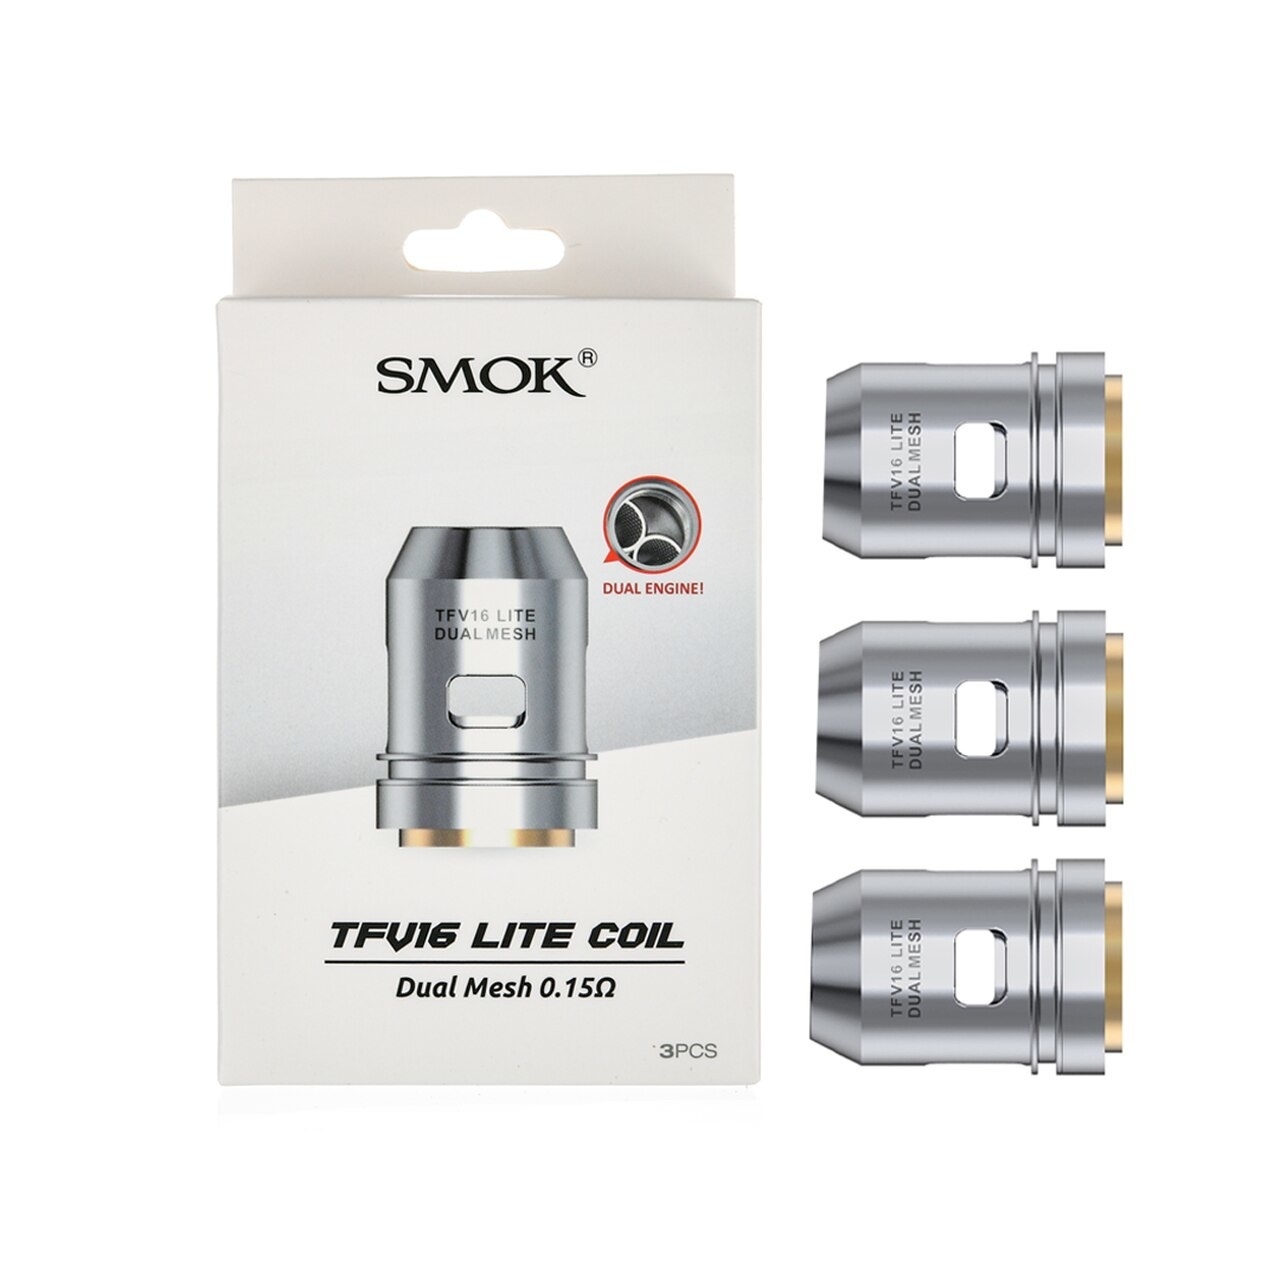 Smok Smok TFV16 Lite Dual Mesh 0.15 Coil Single